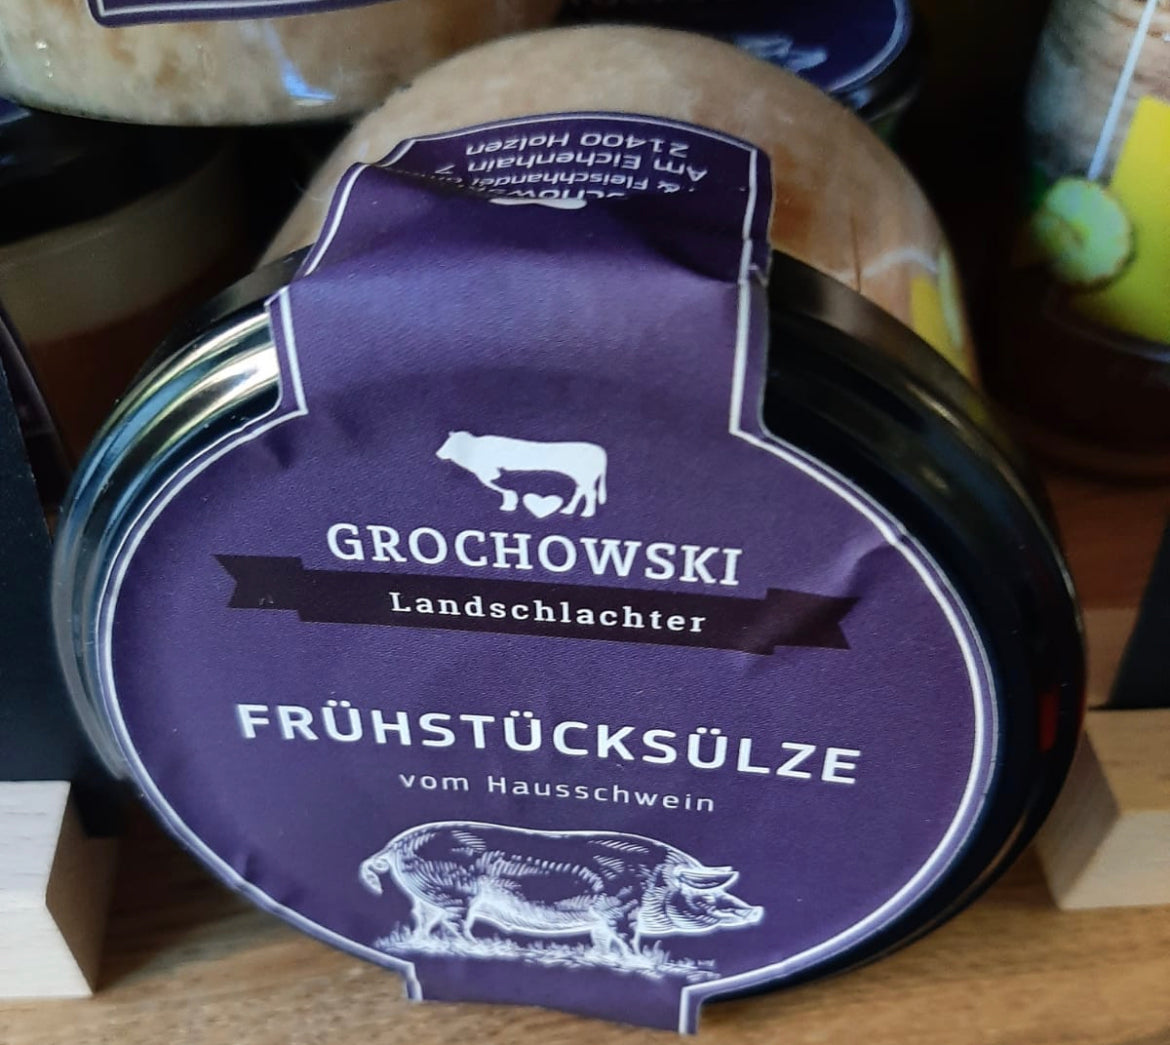 Frühstückssülze vom Hausschwein von Grochowski